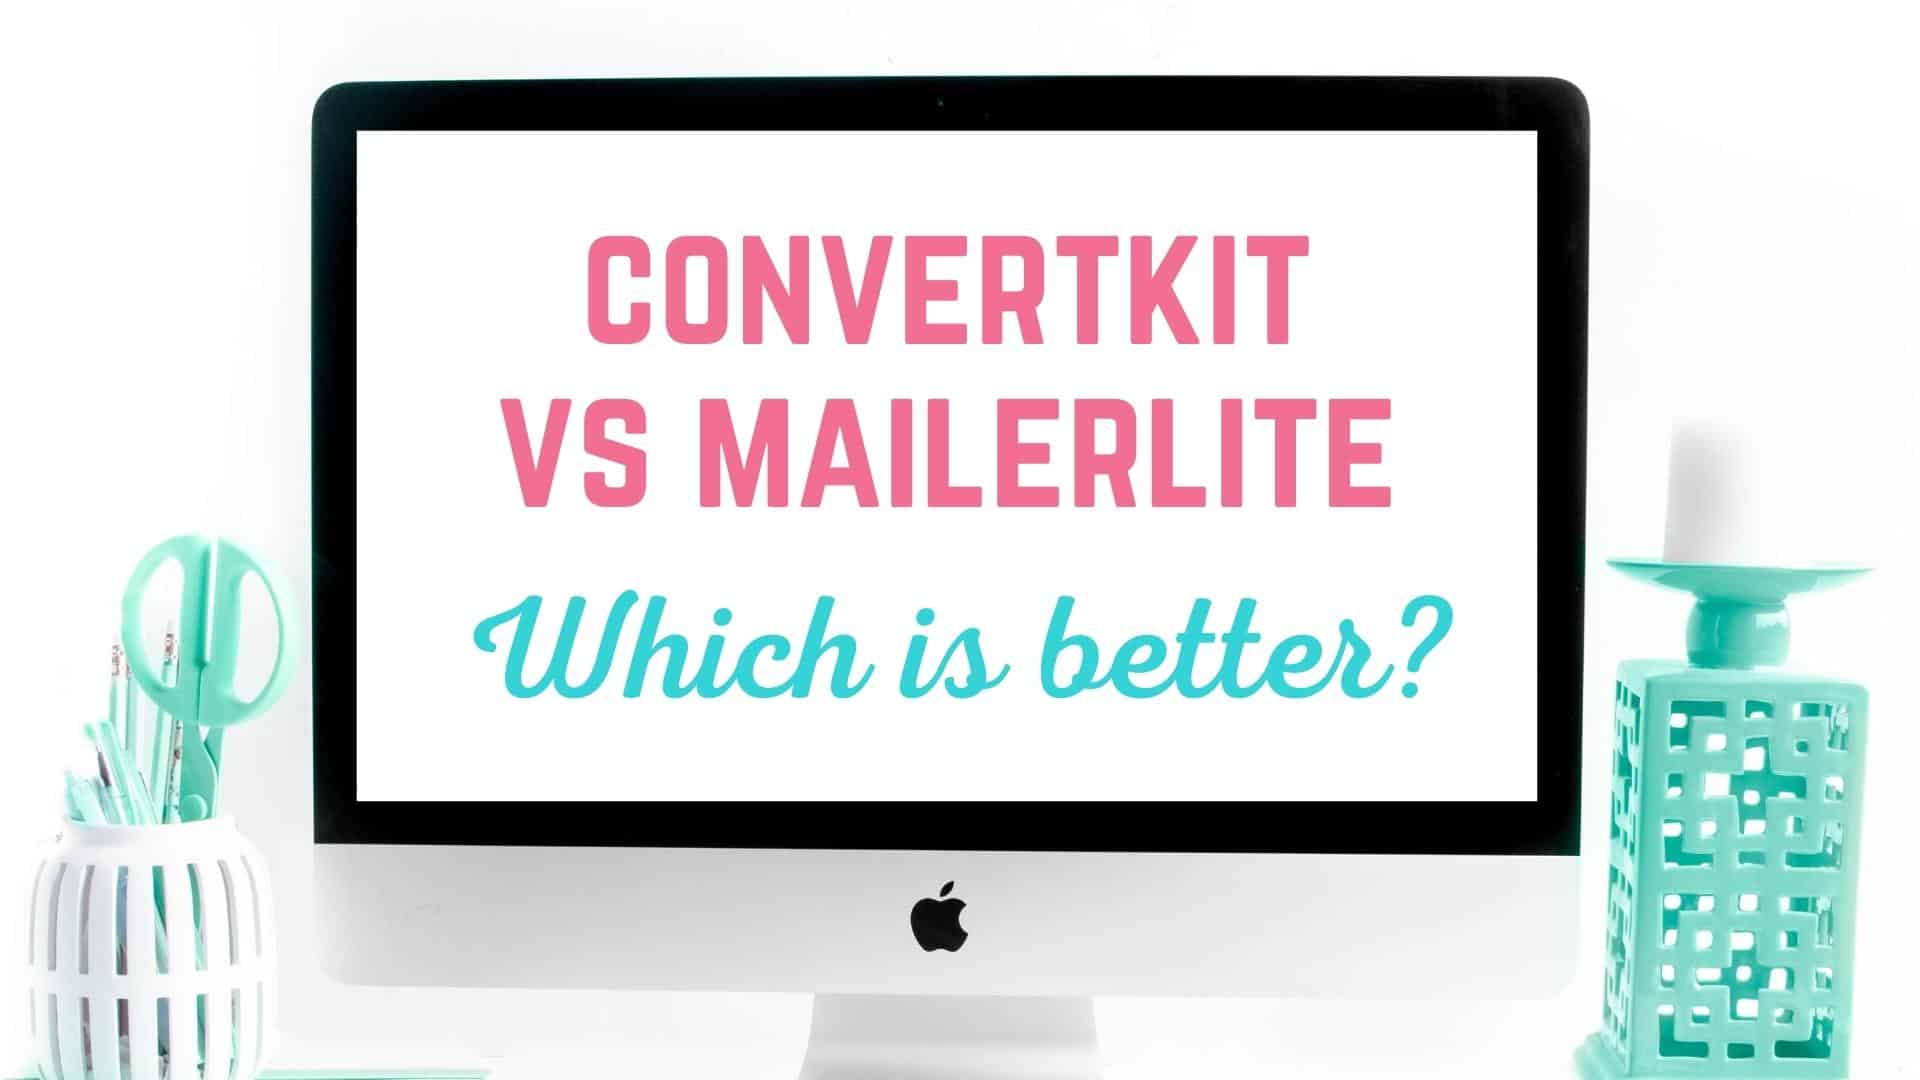 convertkit vs mailerlite, which is better?